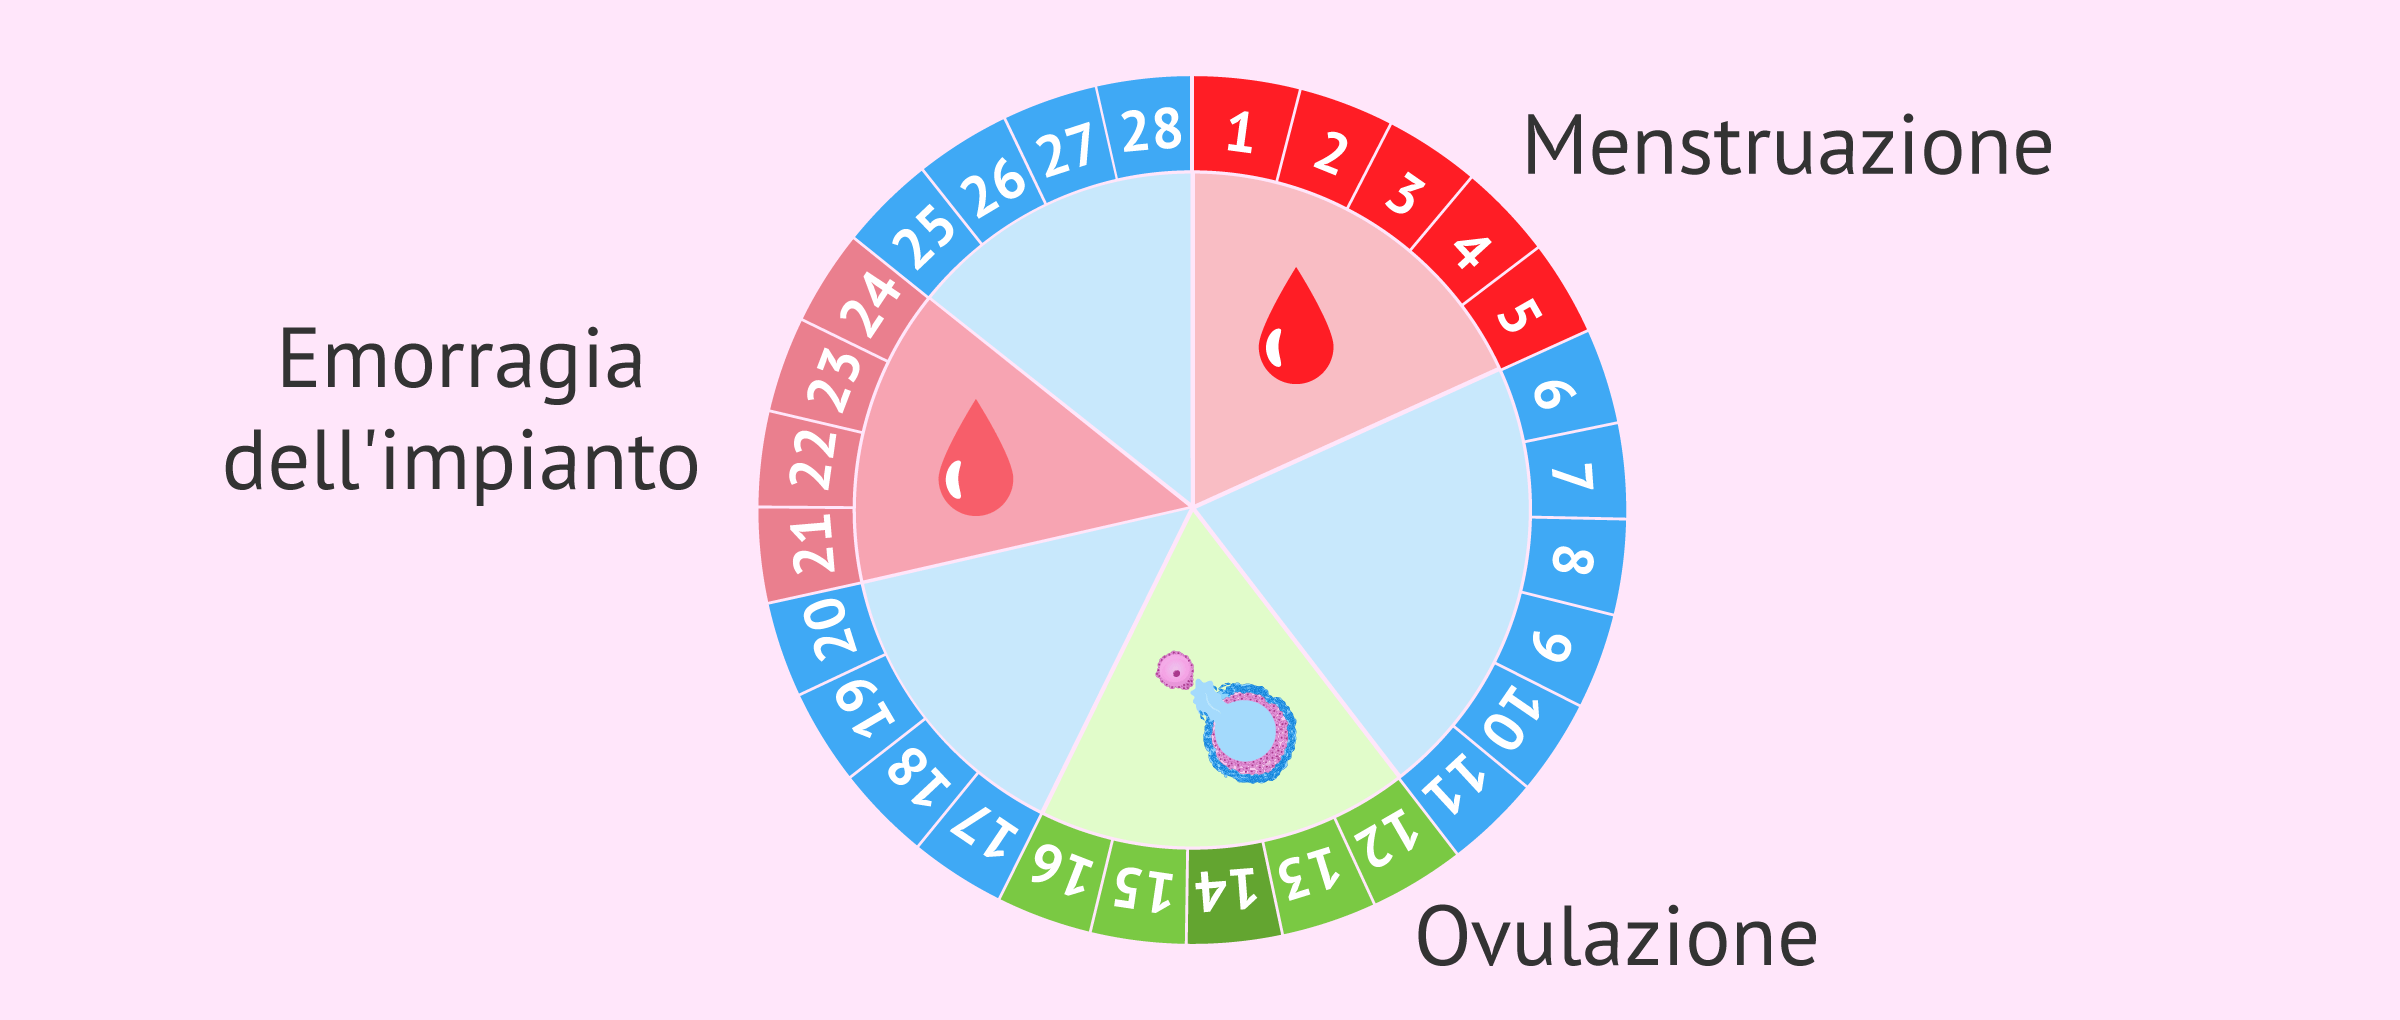 Cuanto dias dura el ciclo menstrual